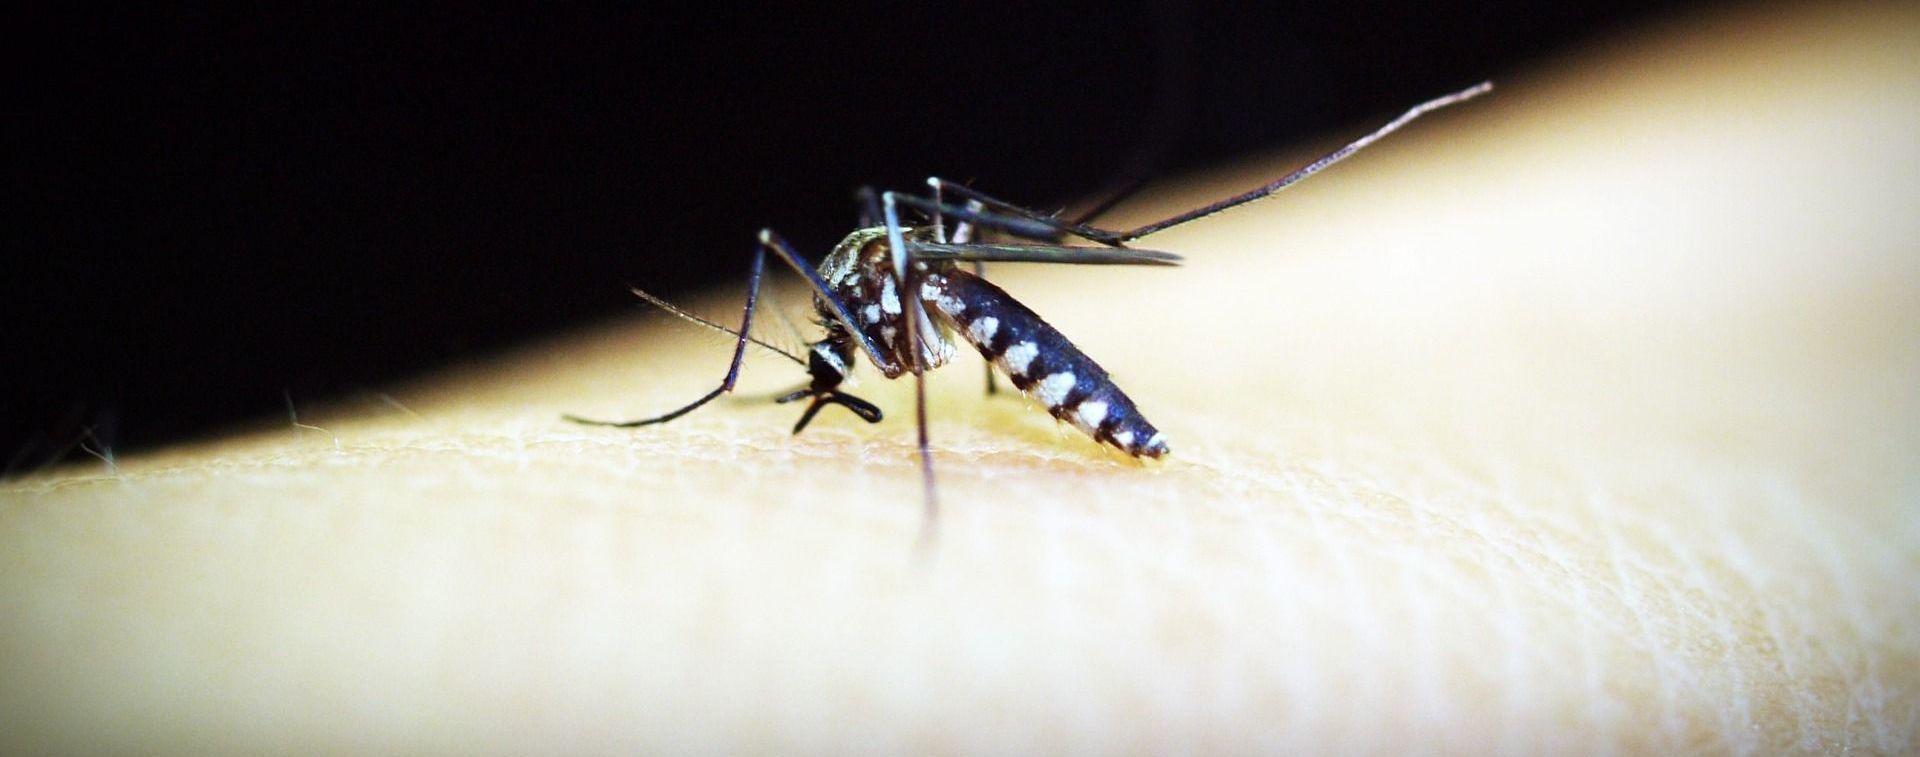 Кишкові інфекції, малярія та поліомієліт: які інфекційні хвороби атакували українців торік